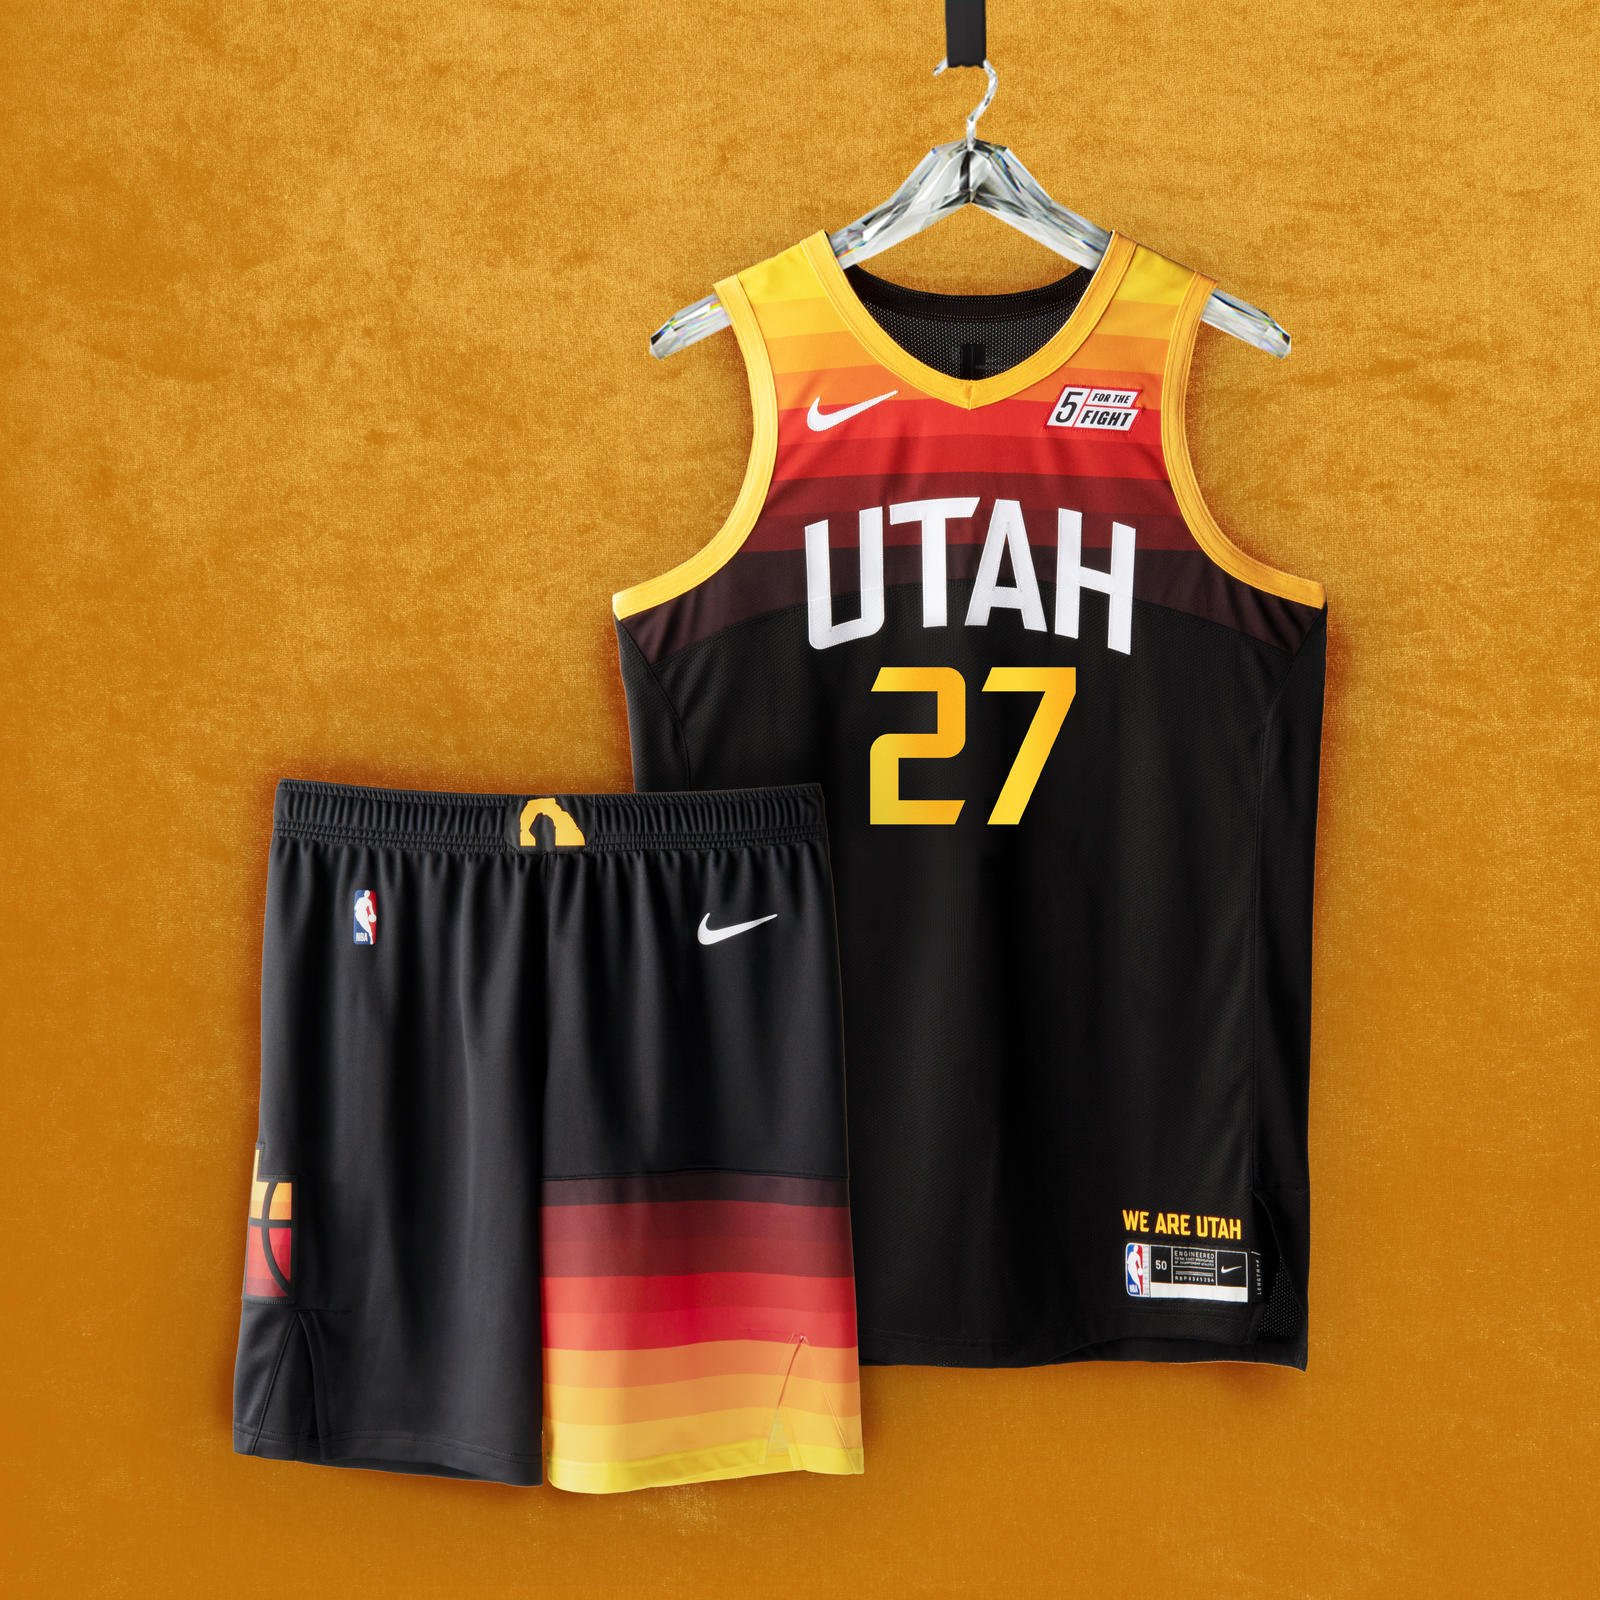 Atlanta Hawks Debut New Nike City Edition Uniforms Against Utah